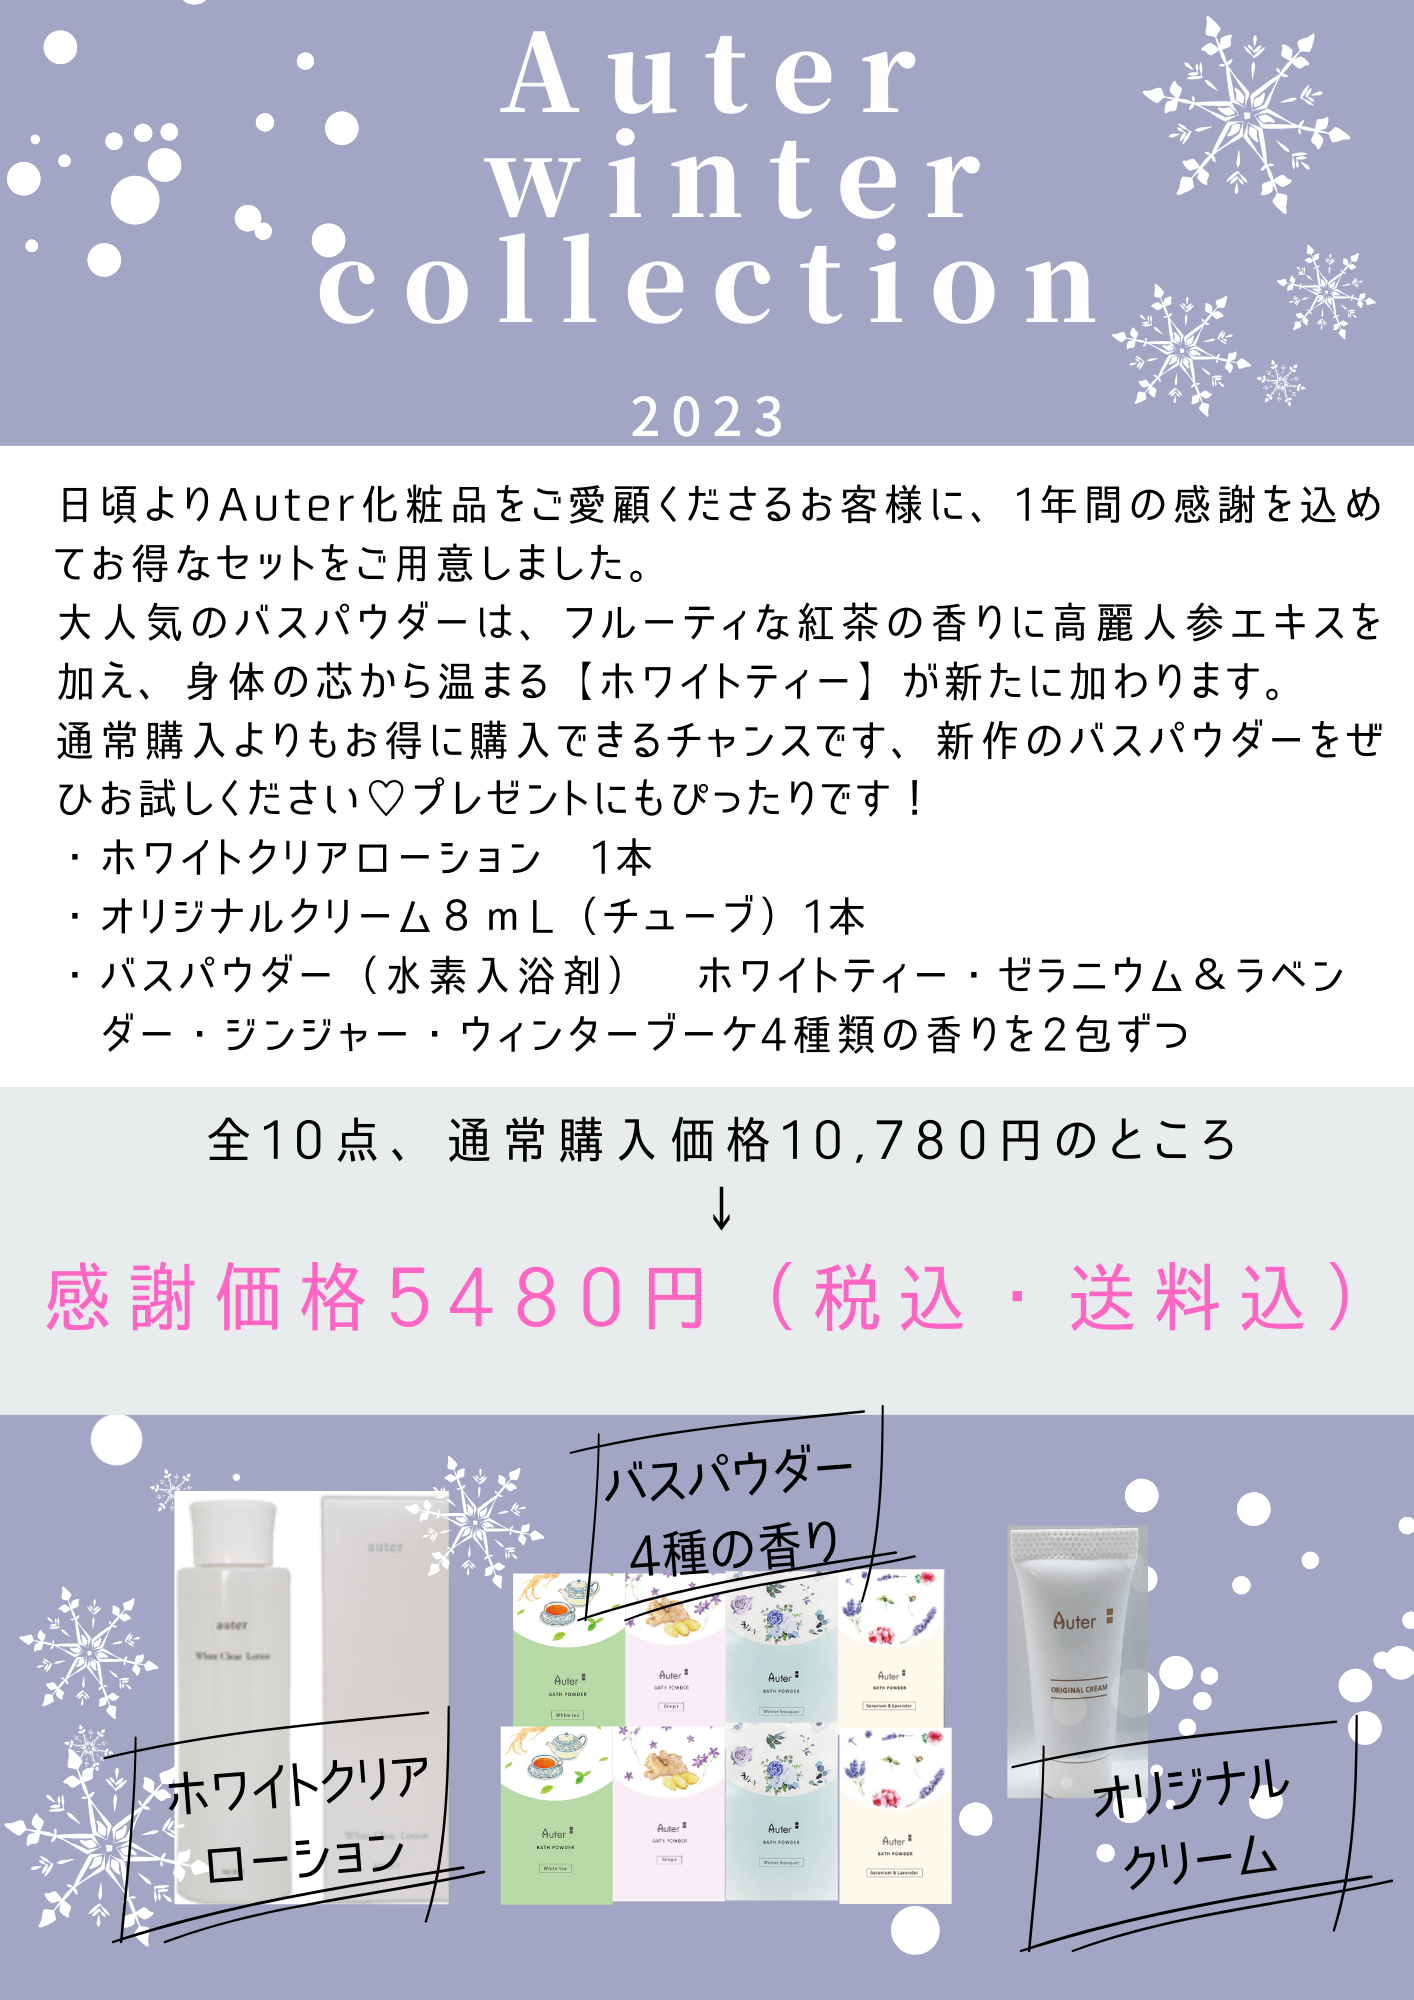 【冬季限定】Auter winter コレクション2023